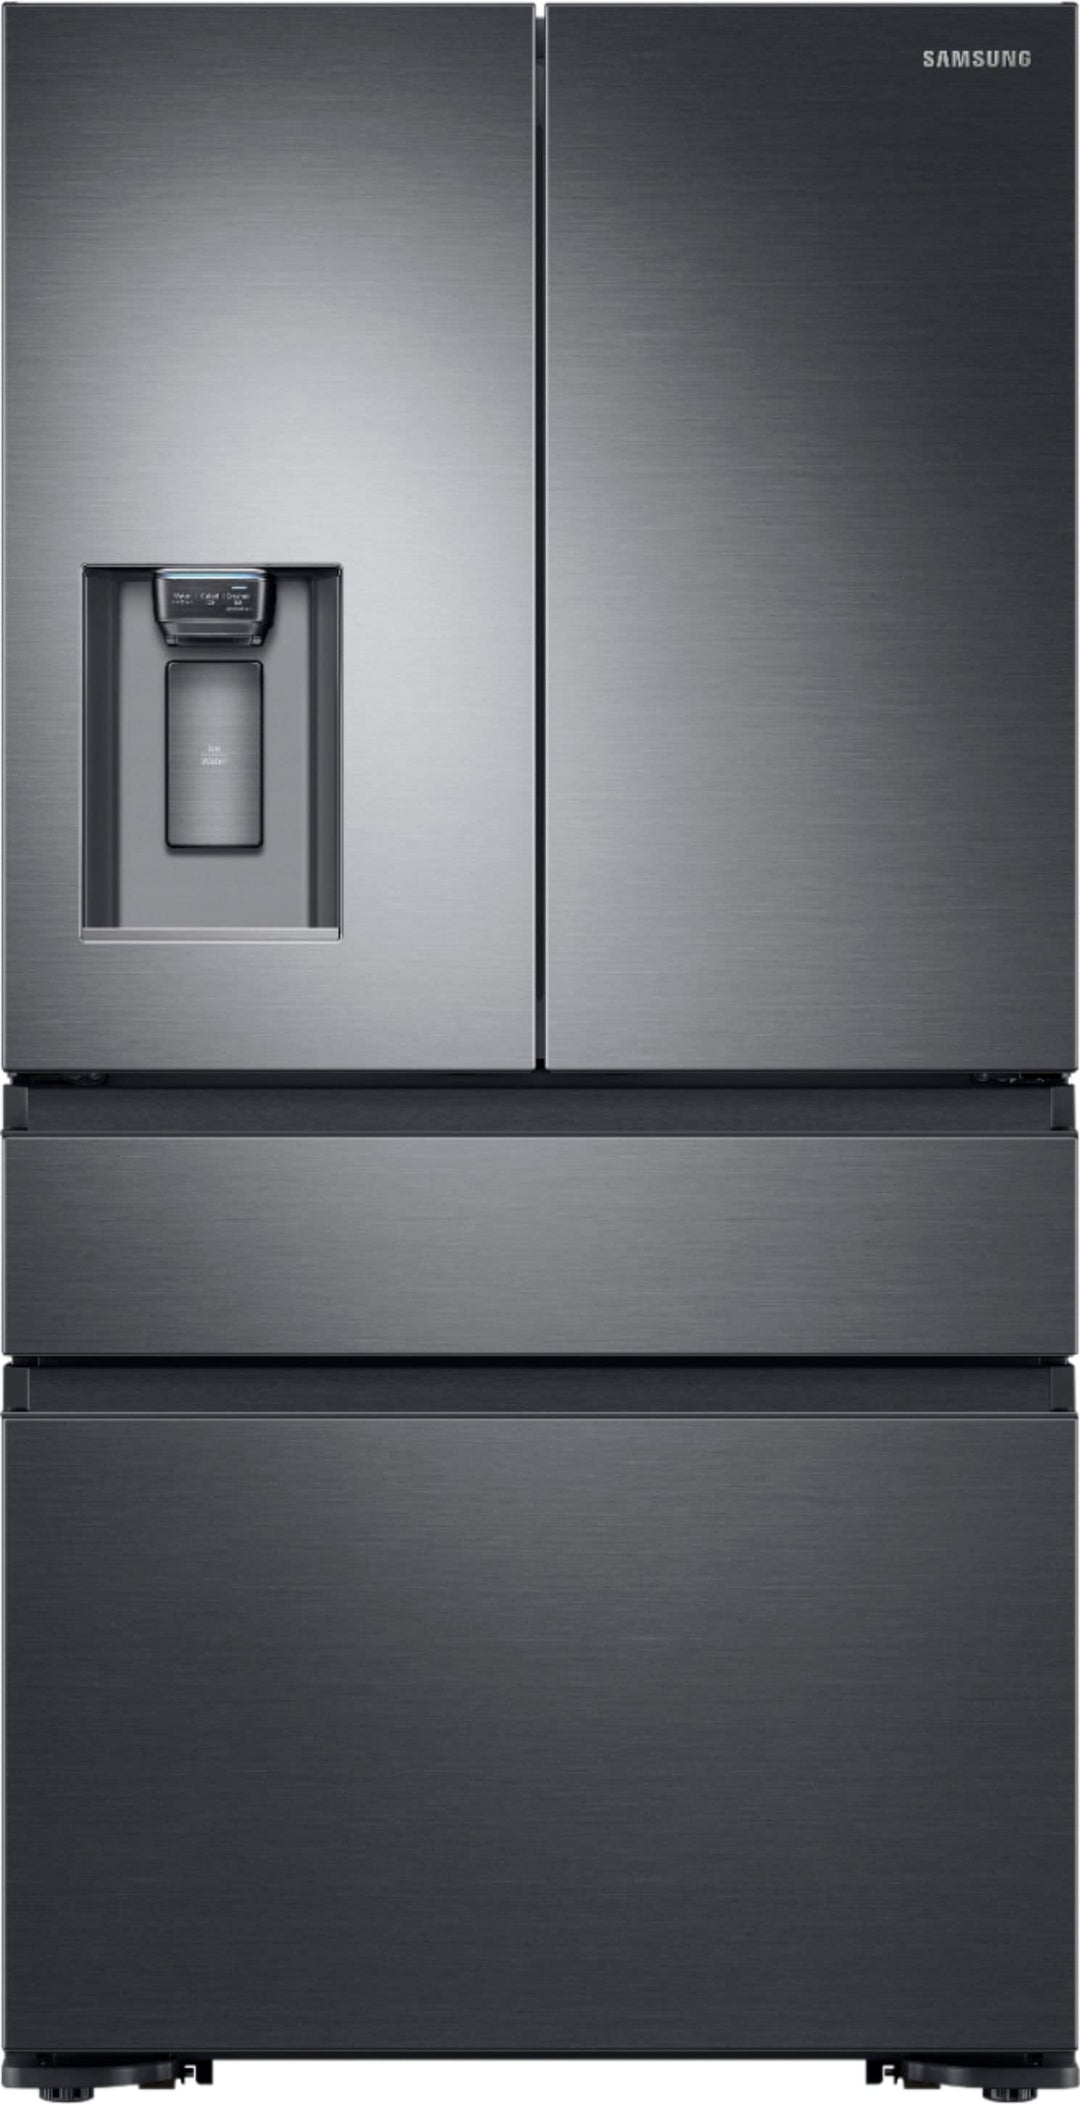 Samsung - 22.6 Cu. Ft. 4-Door Flex French Door Counter-Depth  Fingerprint Resistant Refrigerator - Black stainless steel_0